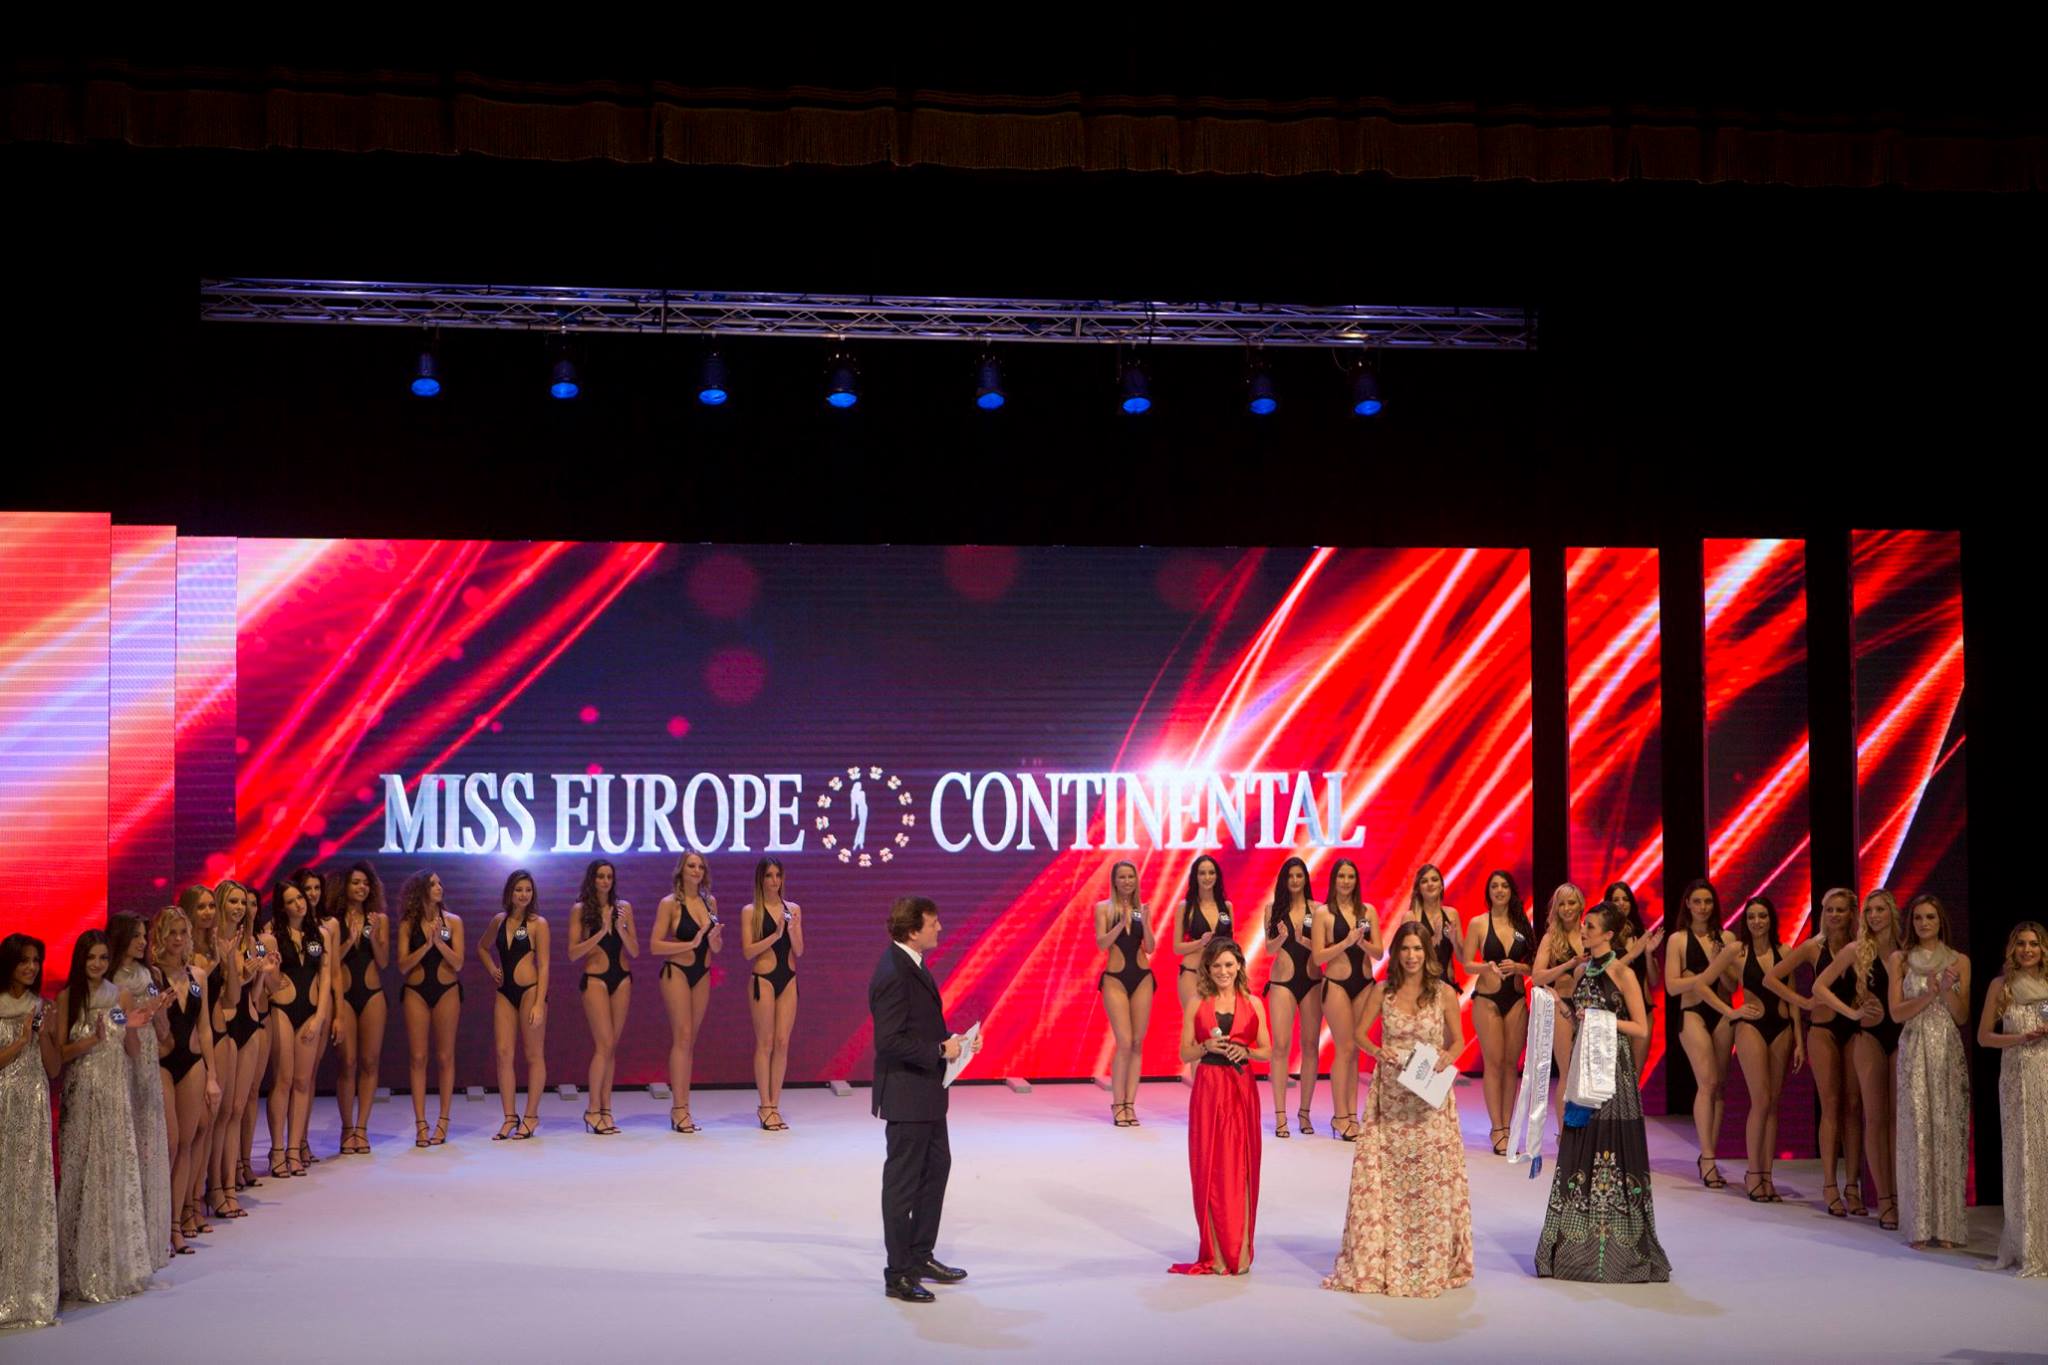  Miss Europe Continental 2017: bellezza, moda, cultura e spettacolo saranno di nuovo a Spoleto